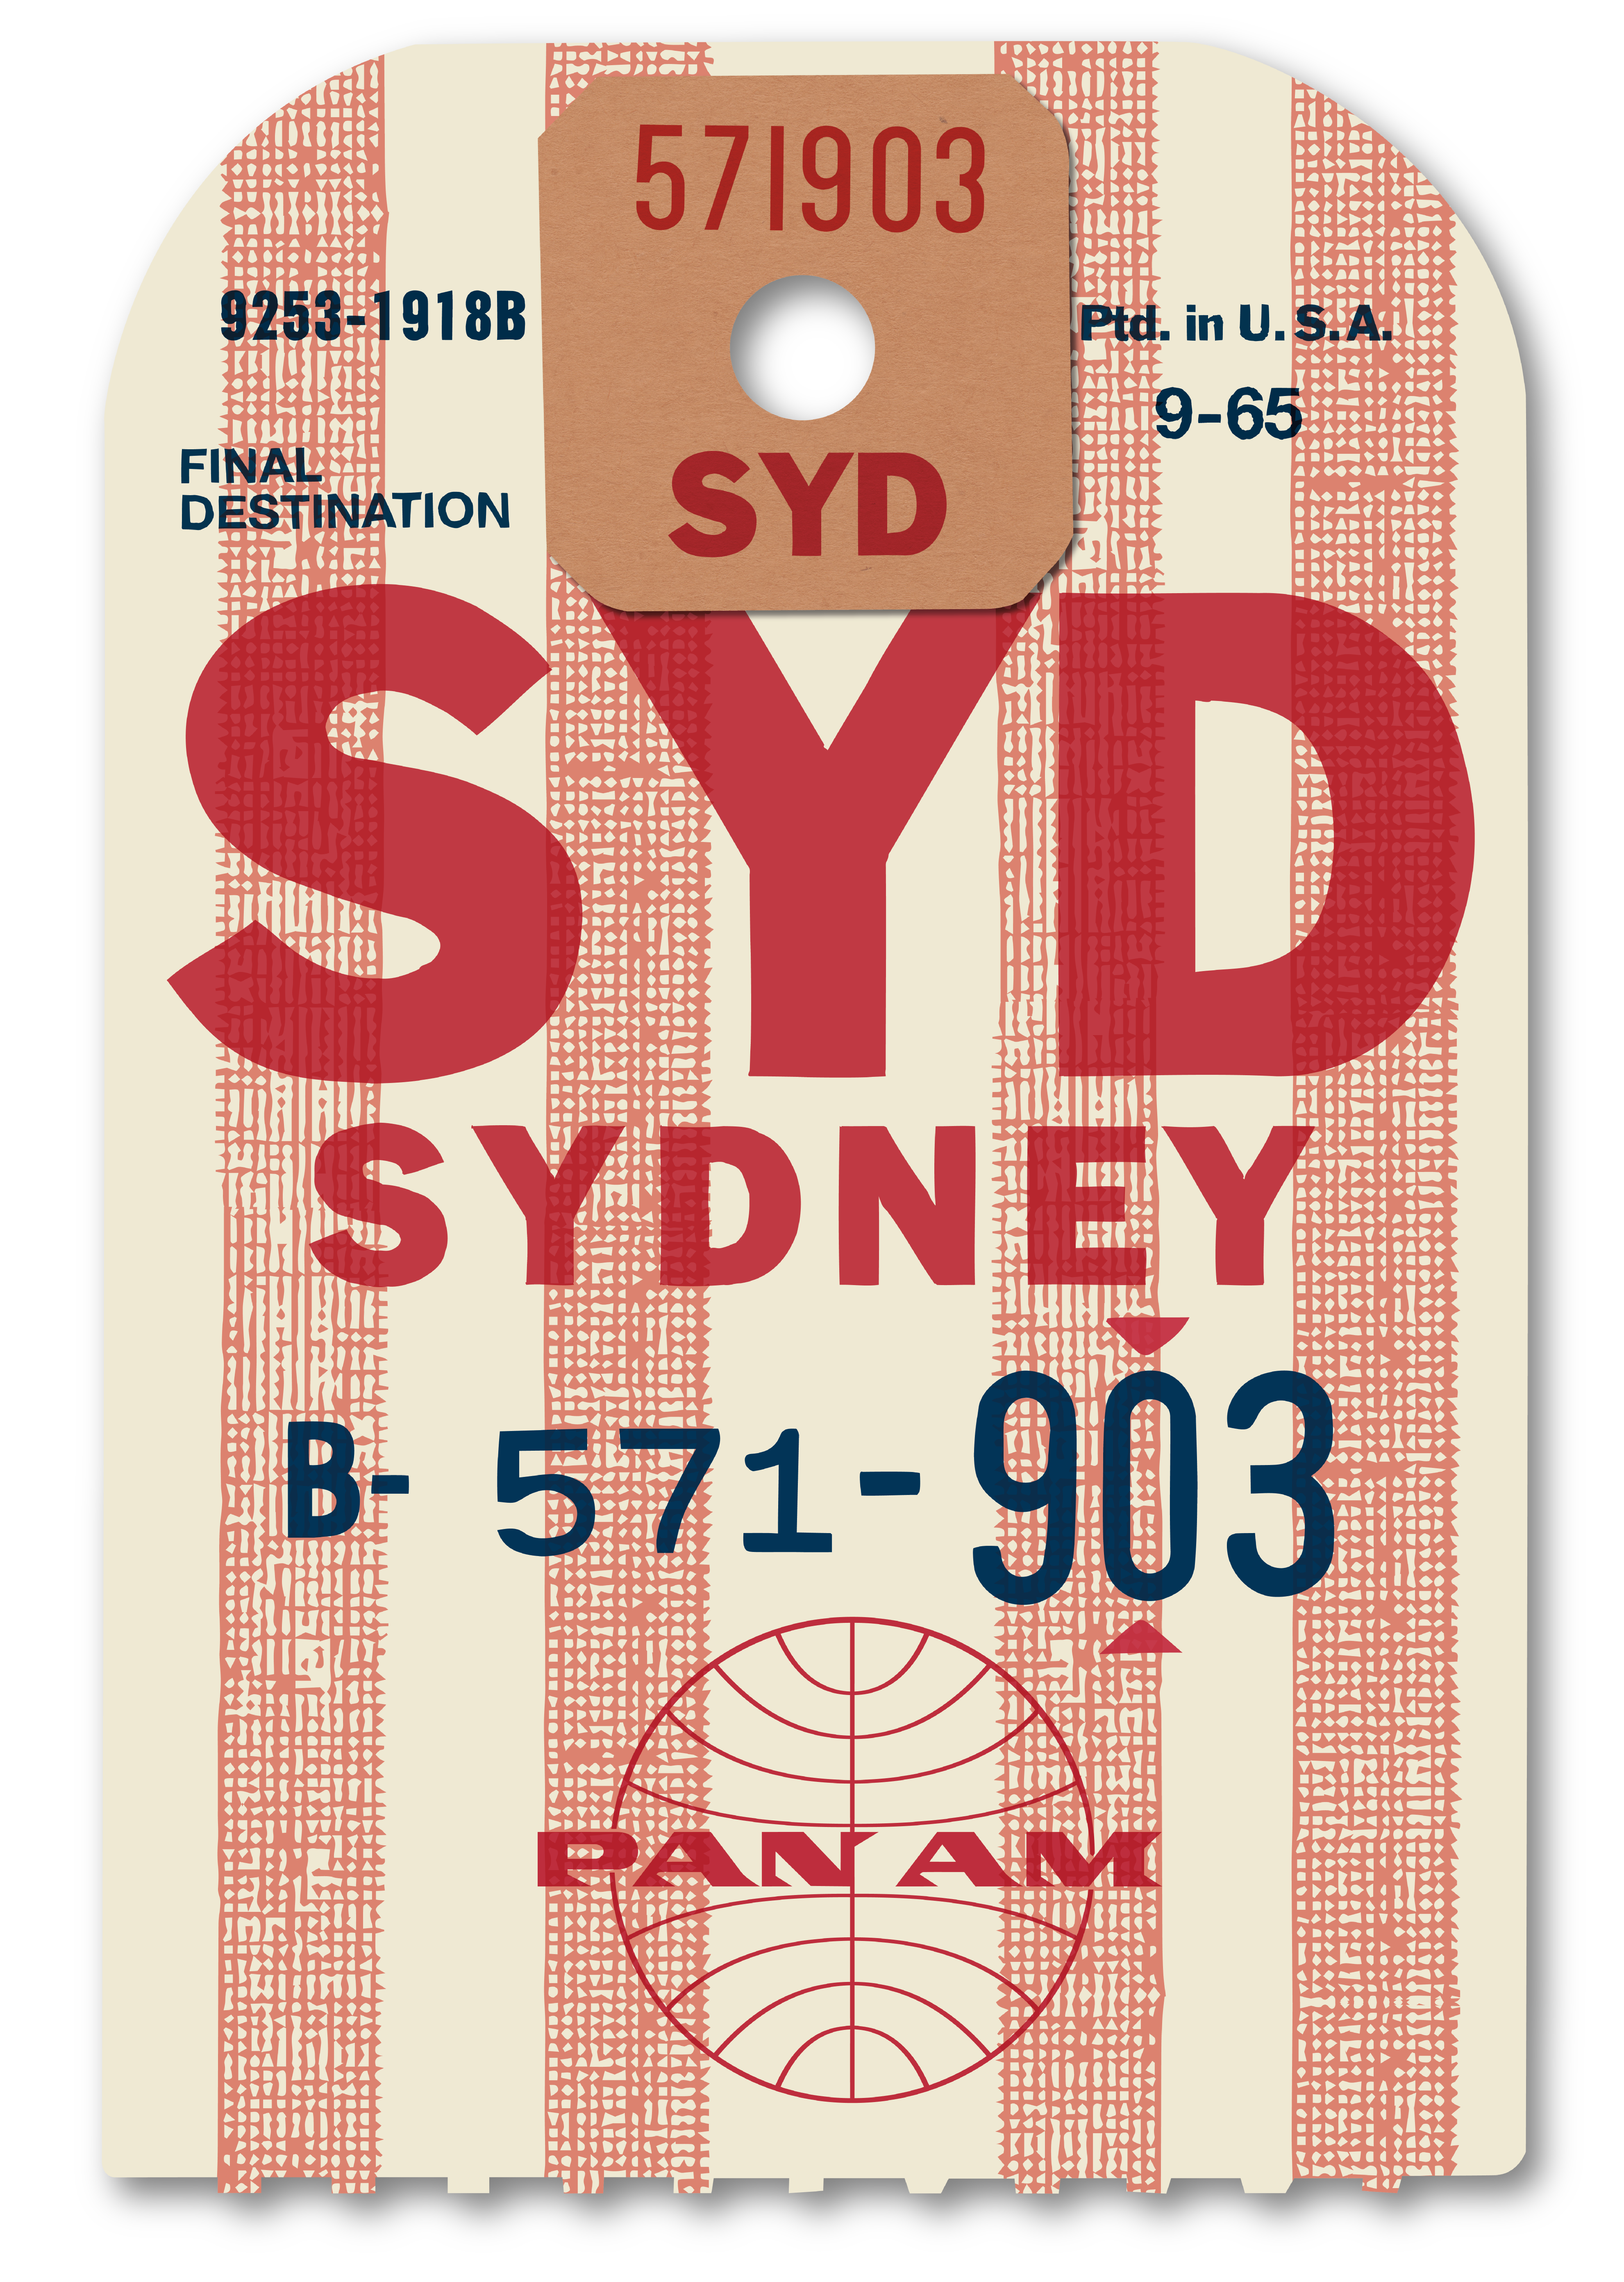 Sydney Pan Am Luggage Label